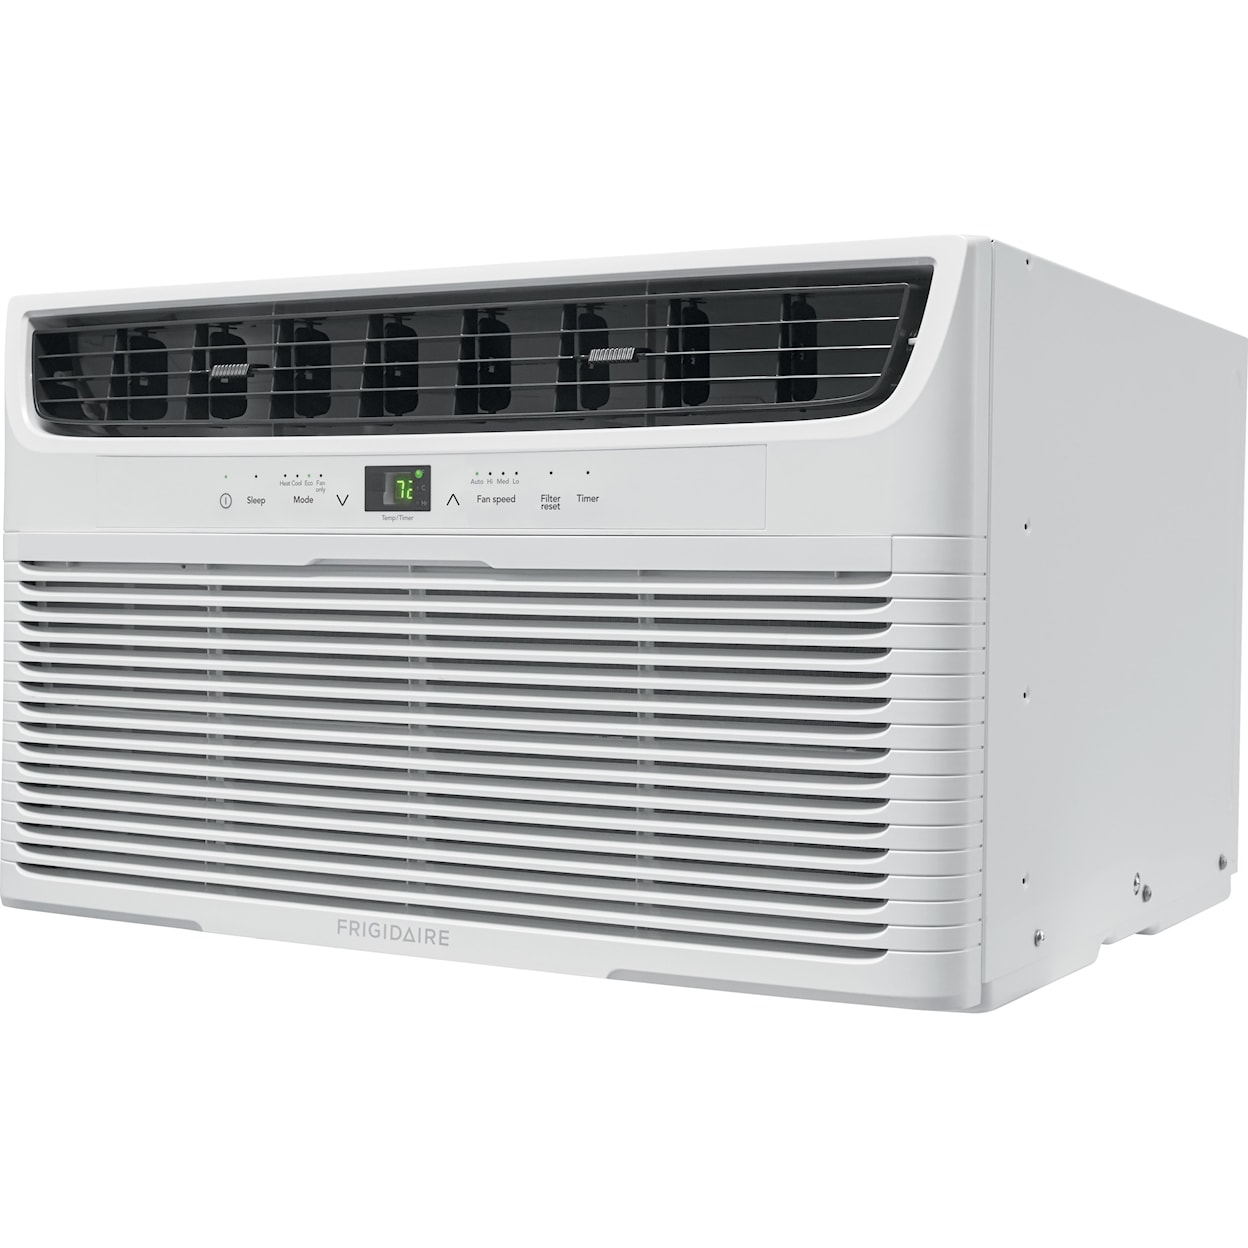 Frigidaire Air Conditioners 8,000 BTU Built-In Room Air Conditioner